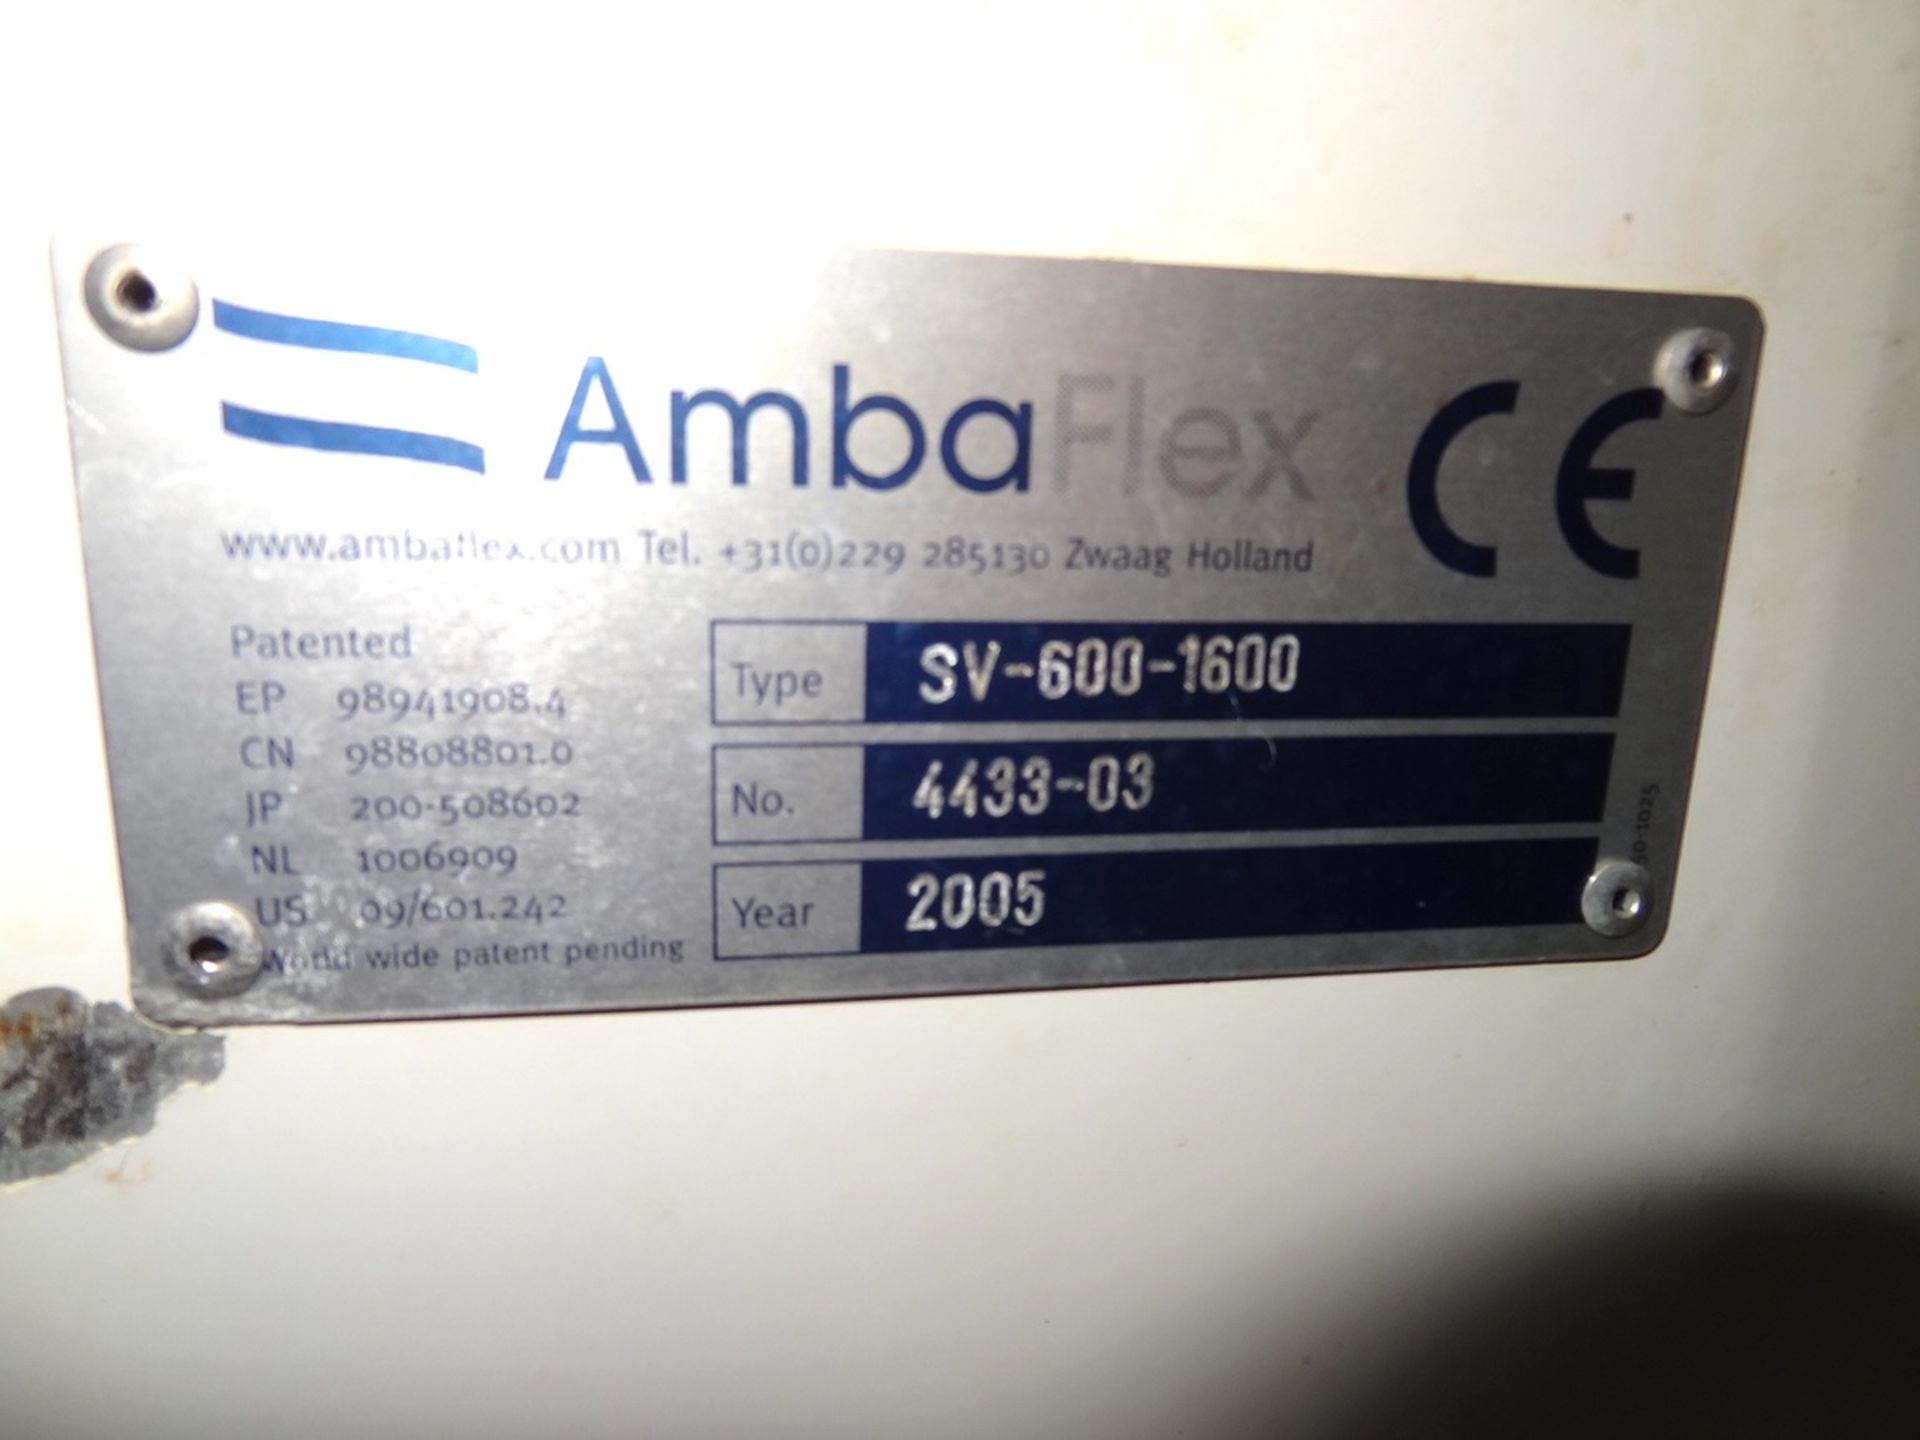 2005 AmbaFlex Spiral Case Elevator Conveyor; Model: SV-600-1600, Serial: 4433-03 - Image 3 of 4